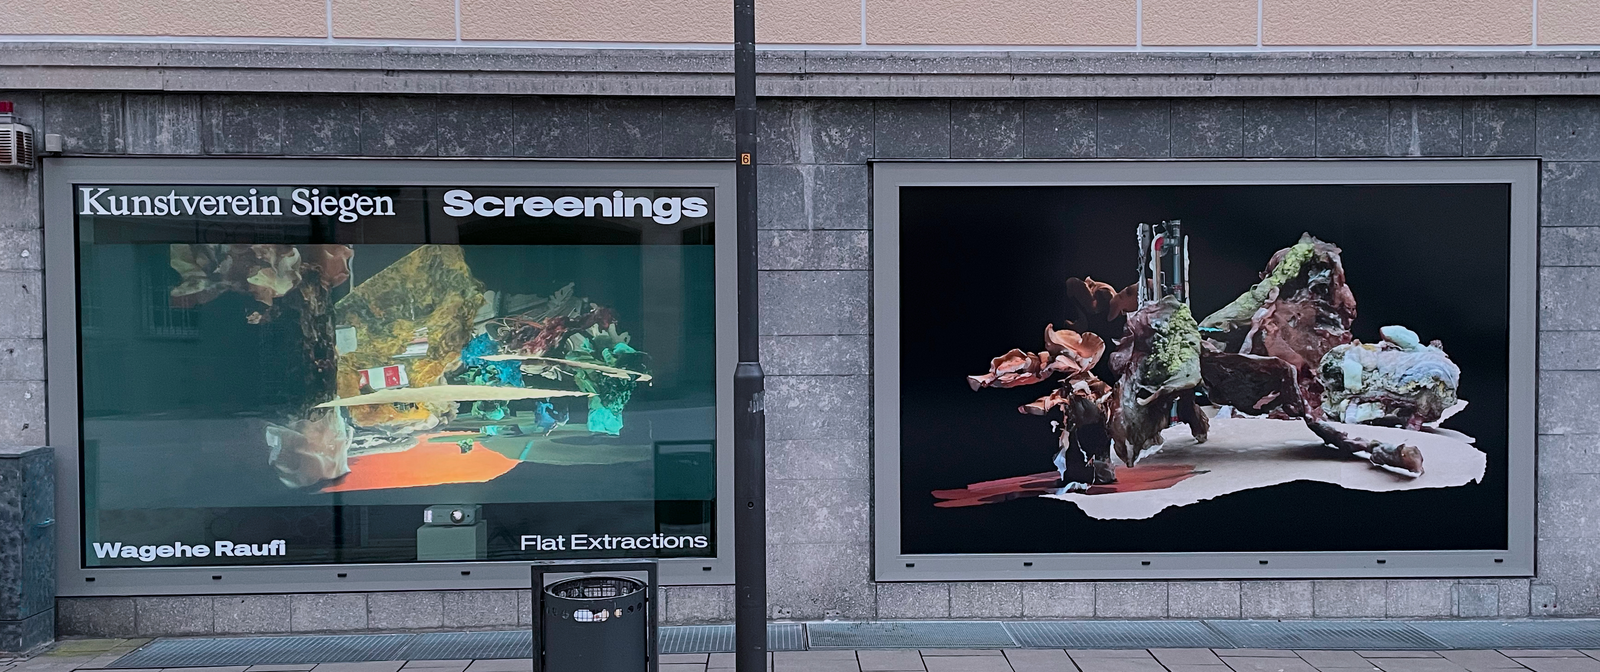 Zwei große Bildschirm an einer Hauswand, auf denen abstrakte Skulpturen zu sehen sind. Auf dem linken Bildschirm steht oben "Kunstverein Siegen - Screenings" und unten "Wagehe Raufi - Flat Extractions".